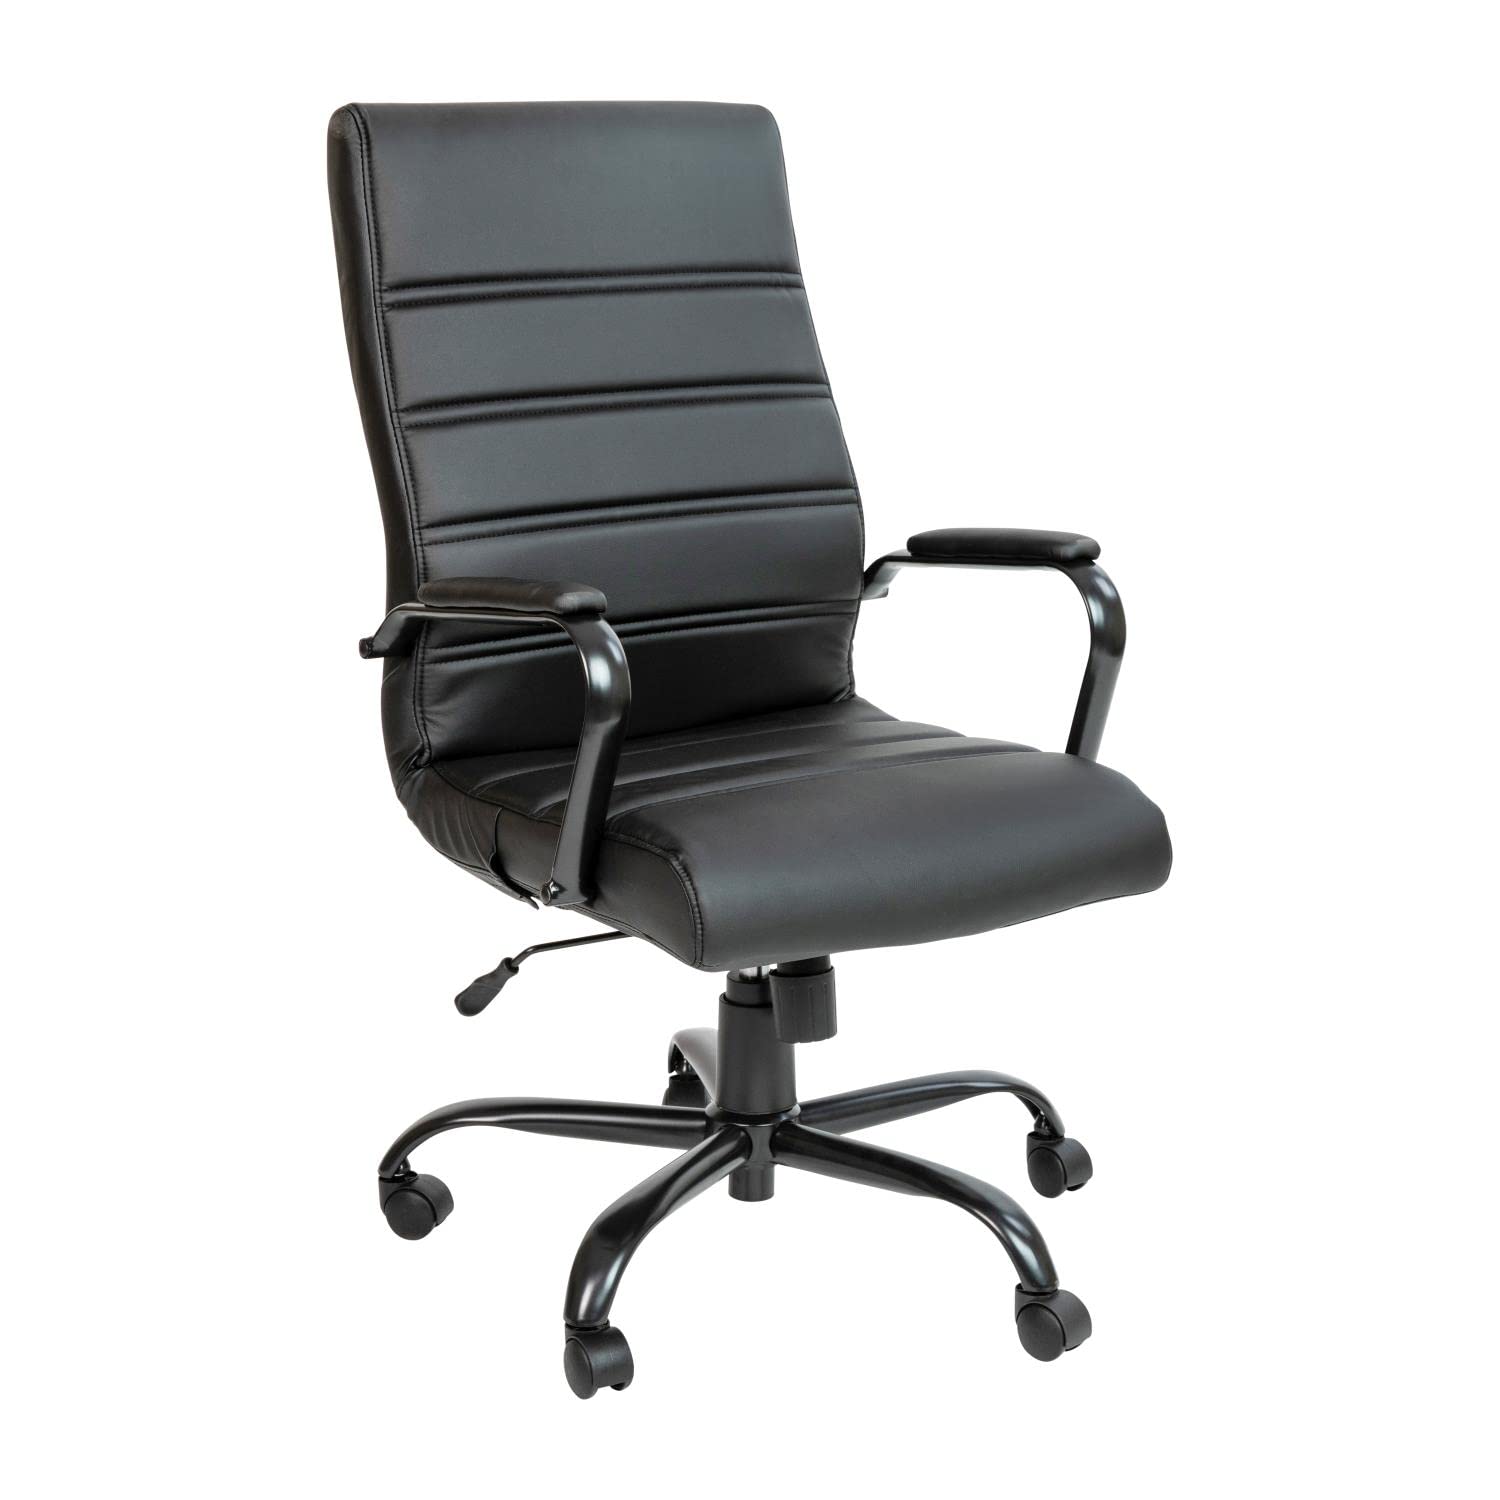  Flash Furniture Стул для рабочего стола с высокой спинкой - черный LeatherSoft Executive Swivel Office Chair with Black Frame - Кресло с вращающ...